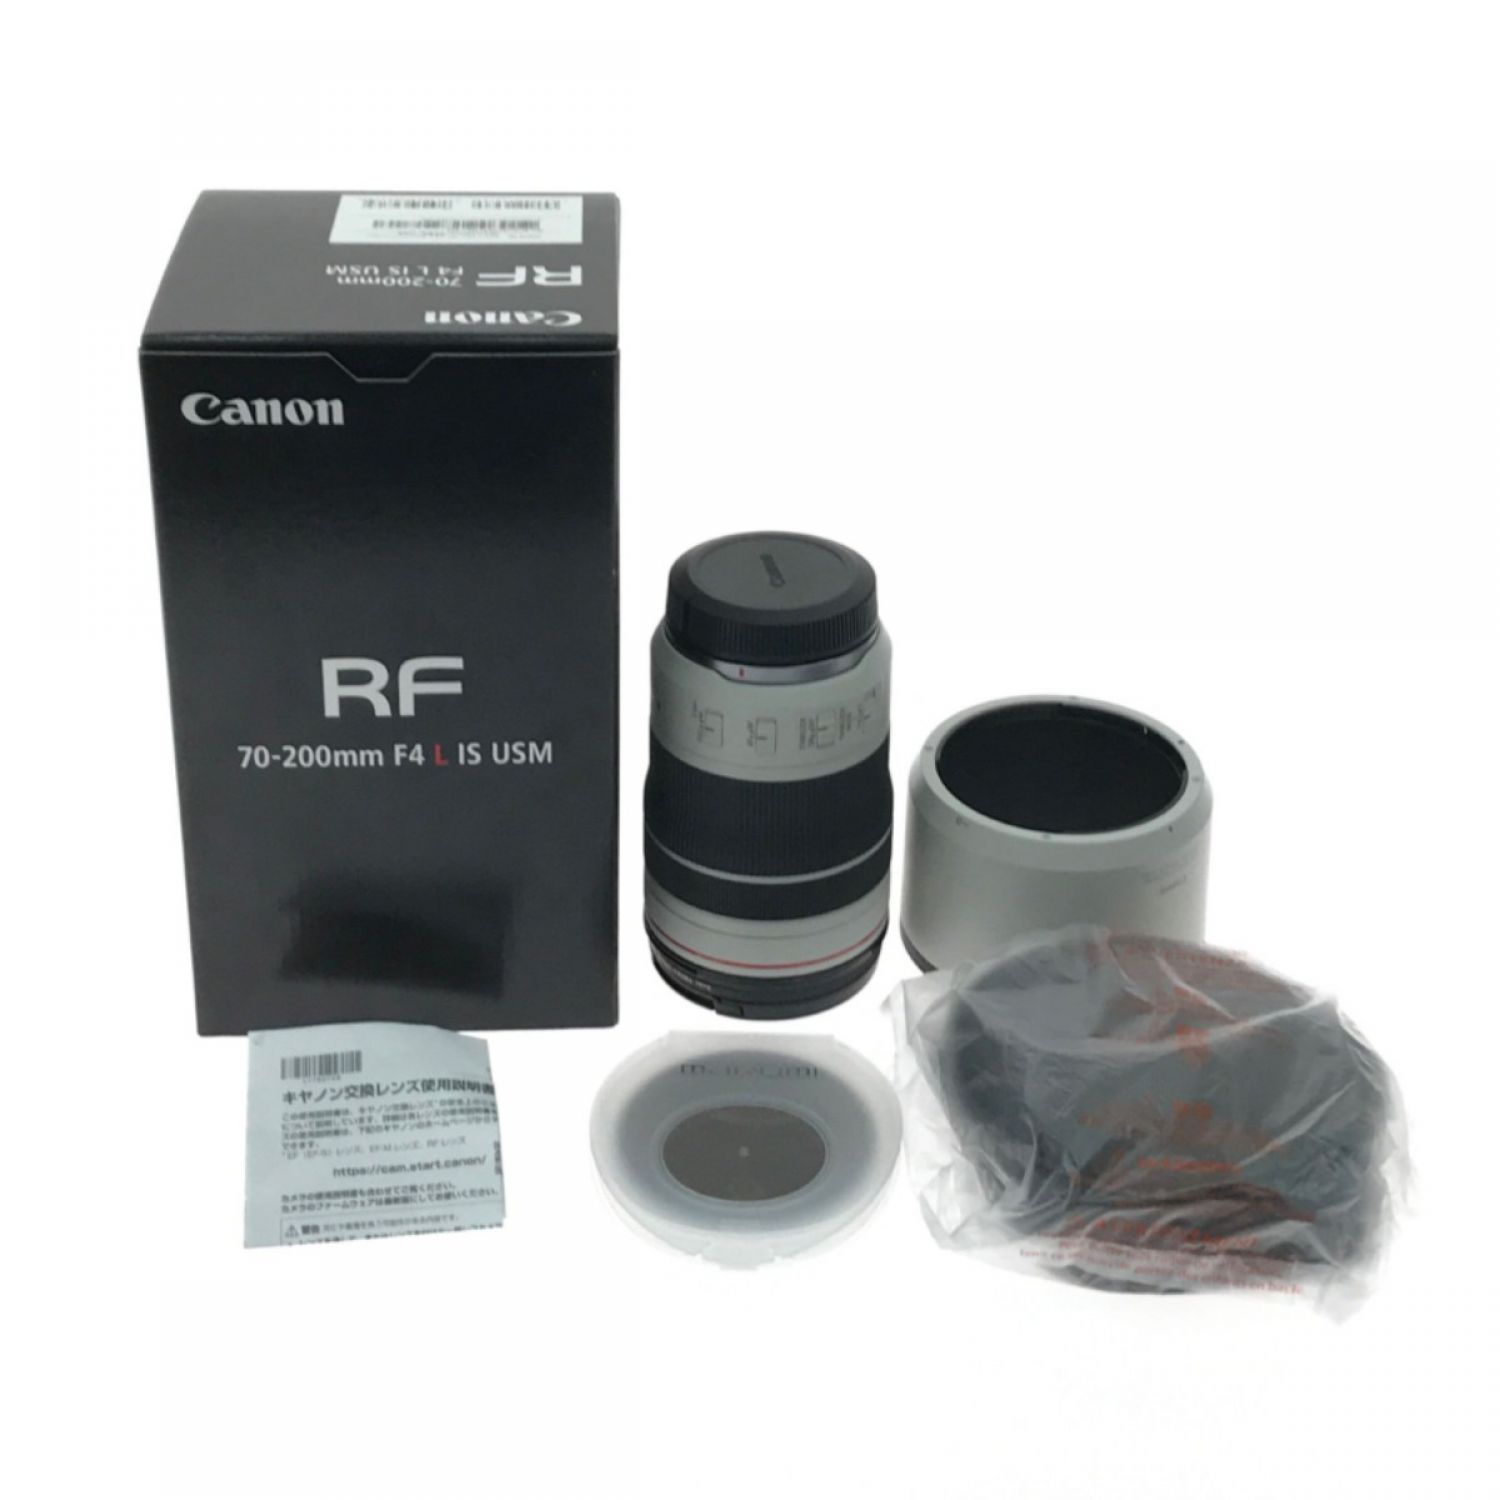 Canon RFレンズ RF70-200mm F4 L IS USM 新品未使用